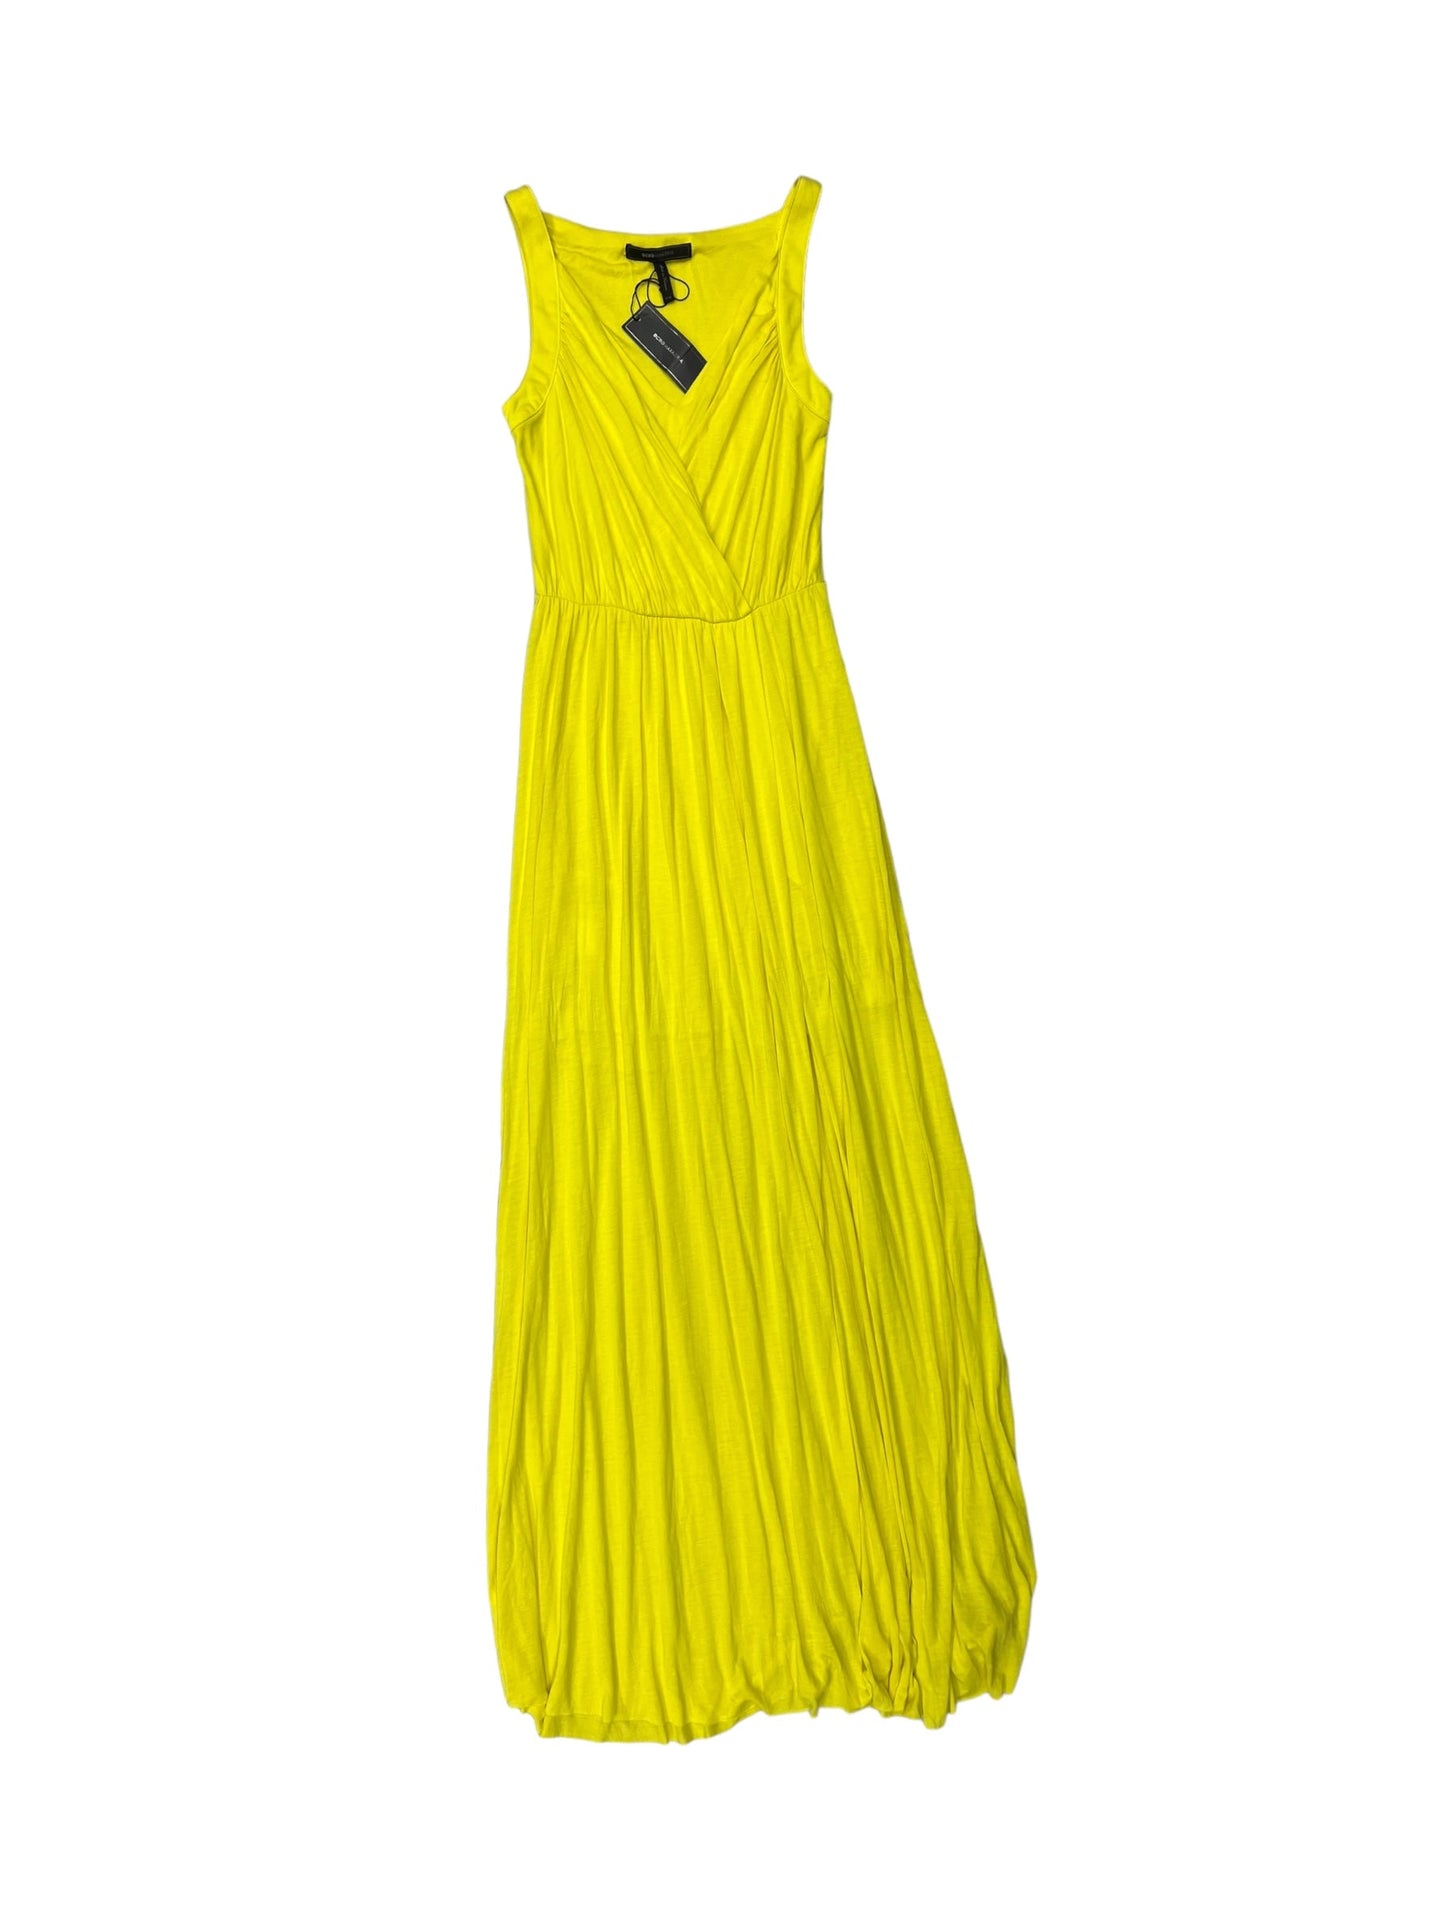 Yellow Dress Casual Maxi Bcbgmaxazria, Size Xxs